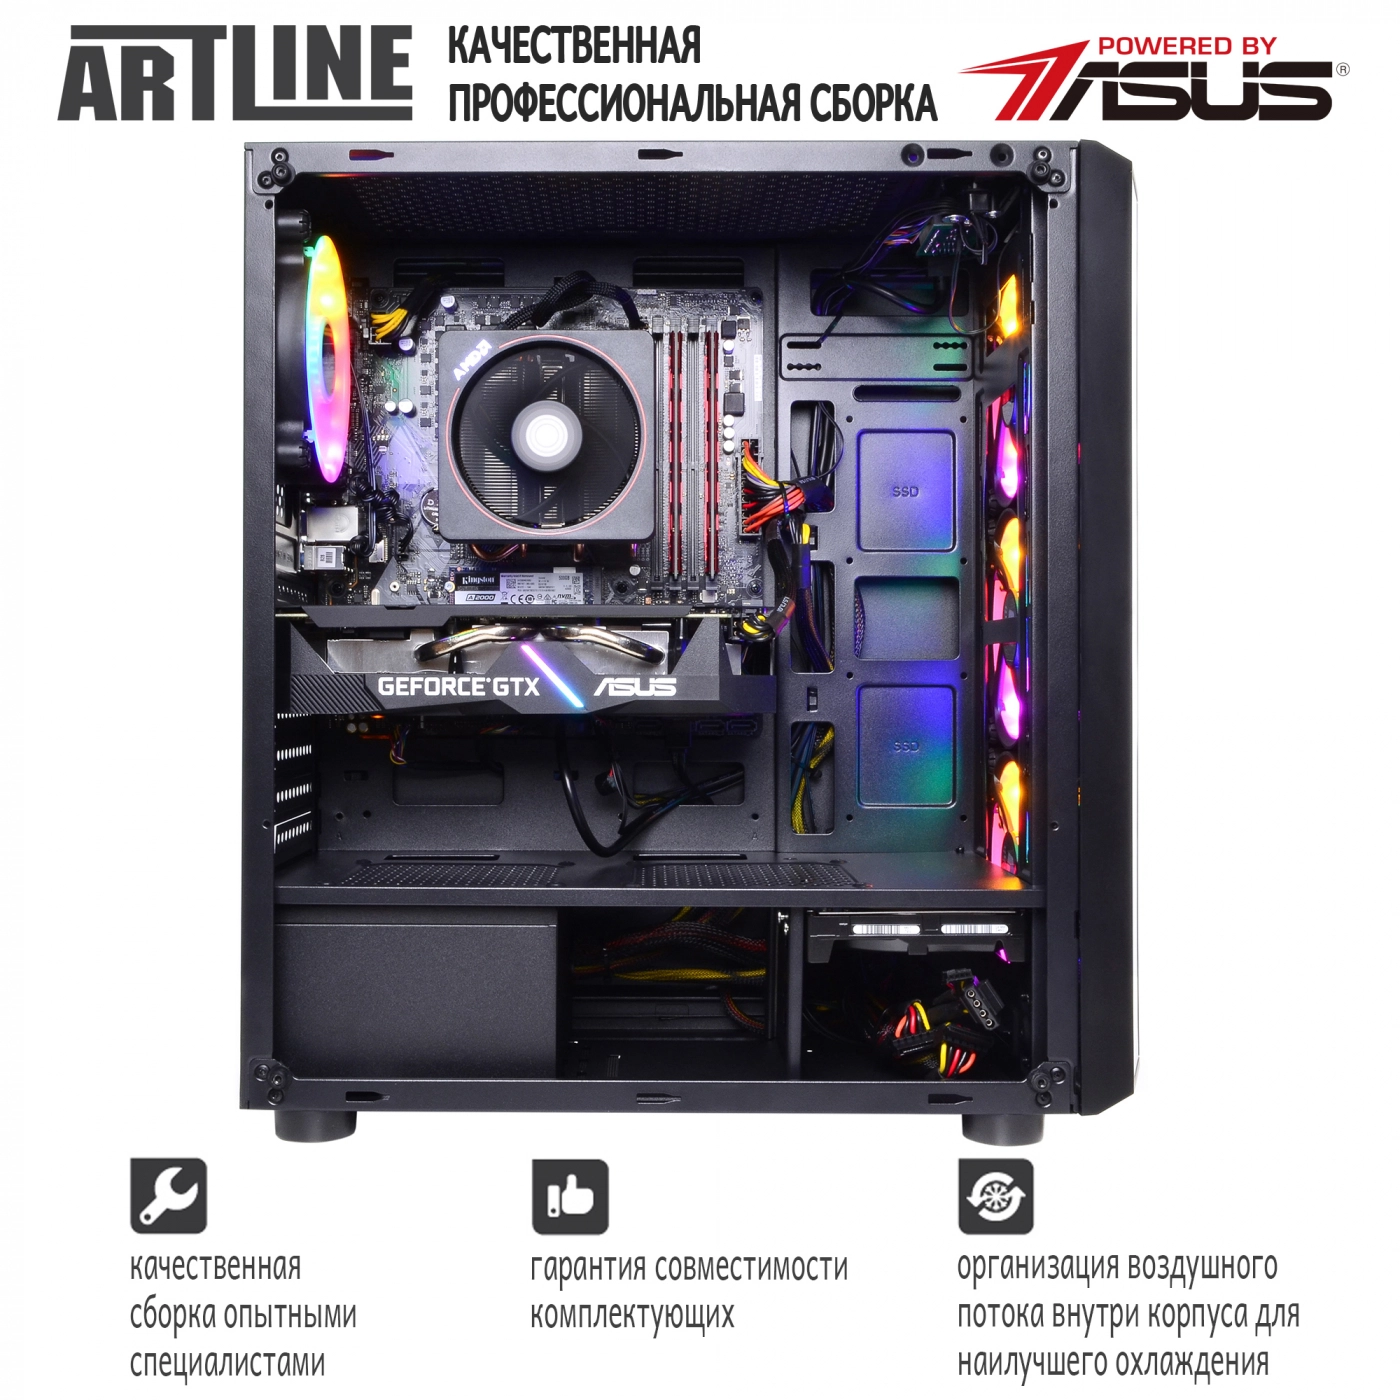 Купить Компьютер ARTLINE Gaming X65v20 - фото 9